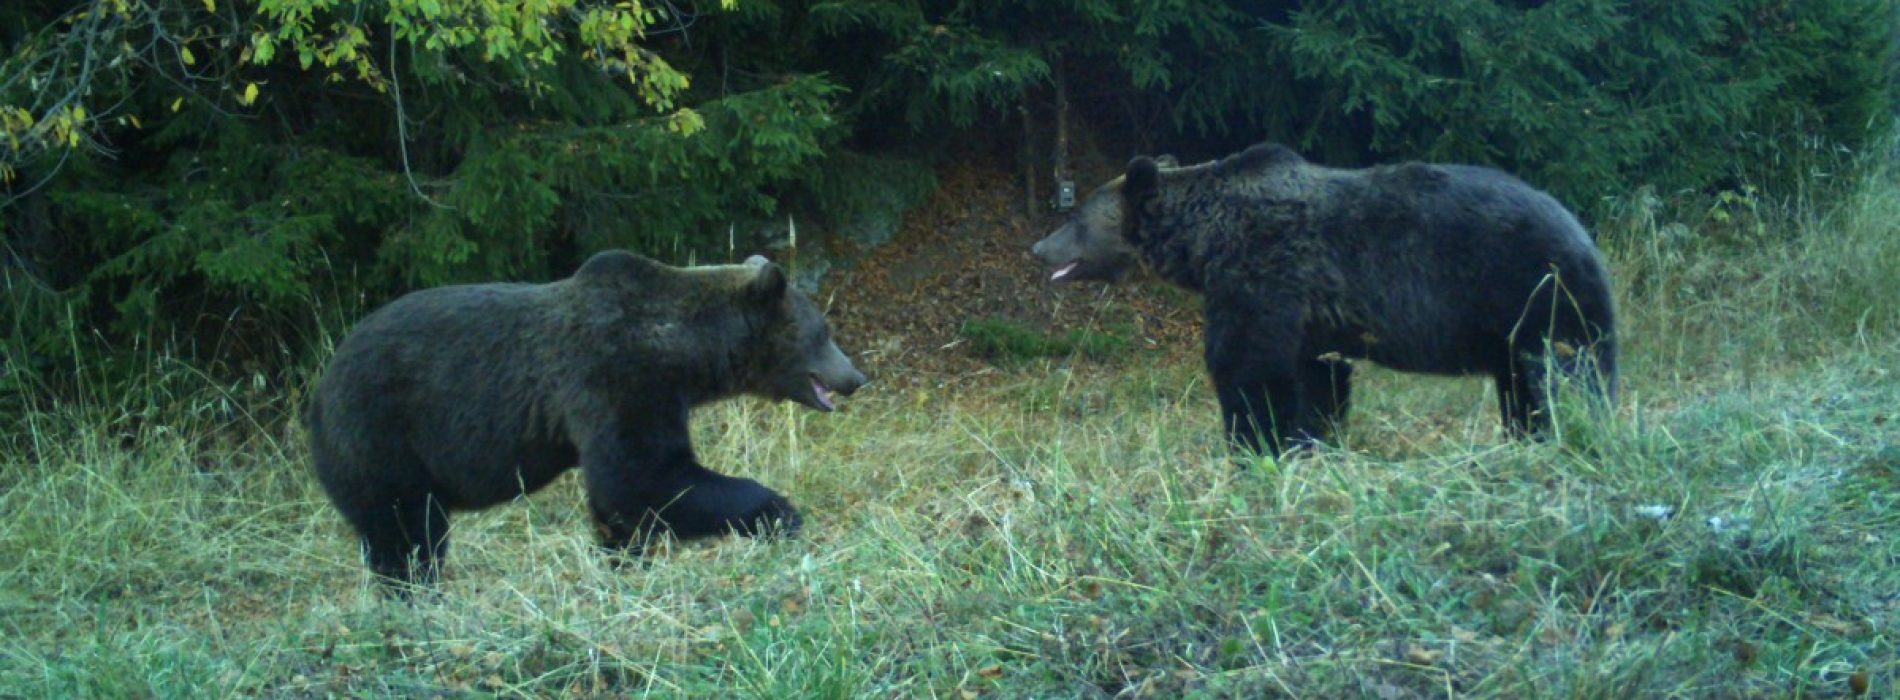 Premieră în România: recensământ al urșilor bruni, prin metode genetice, în Făgăraș